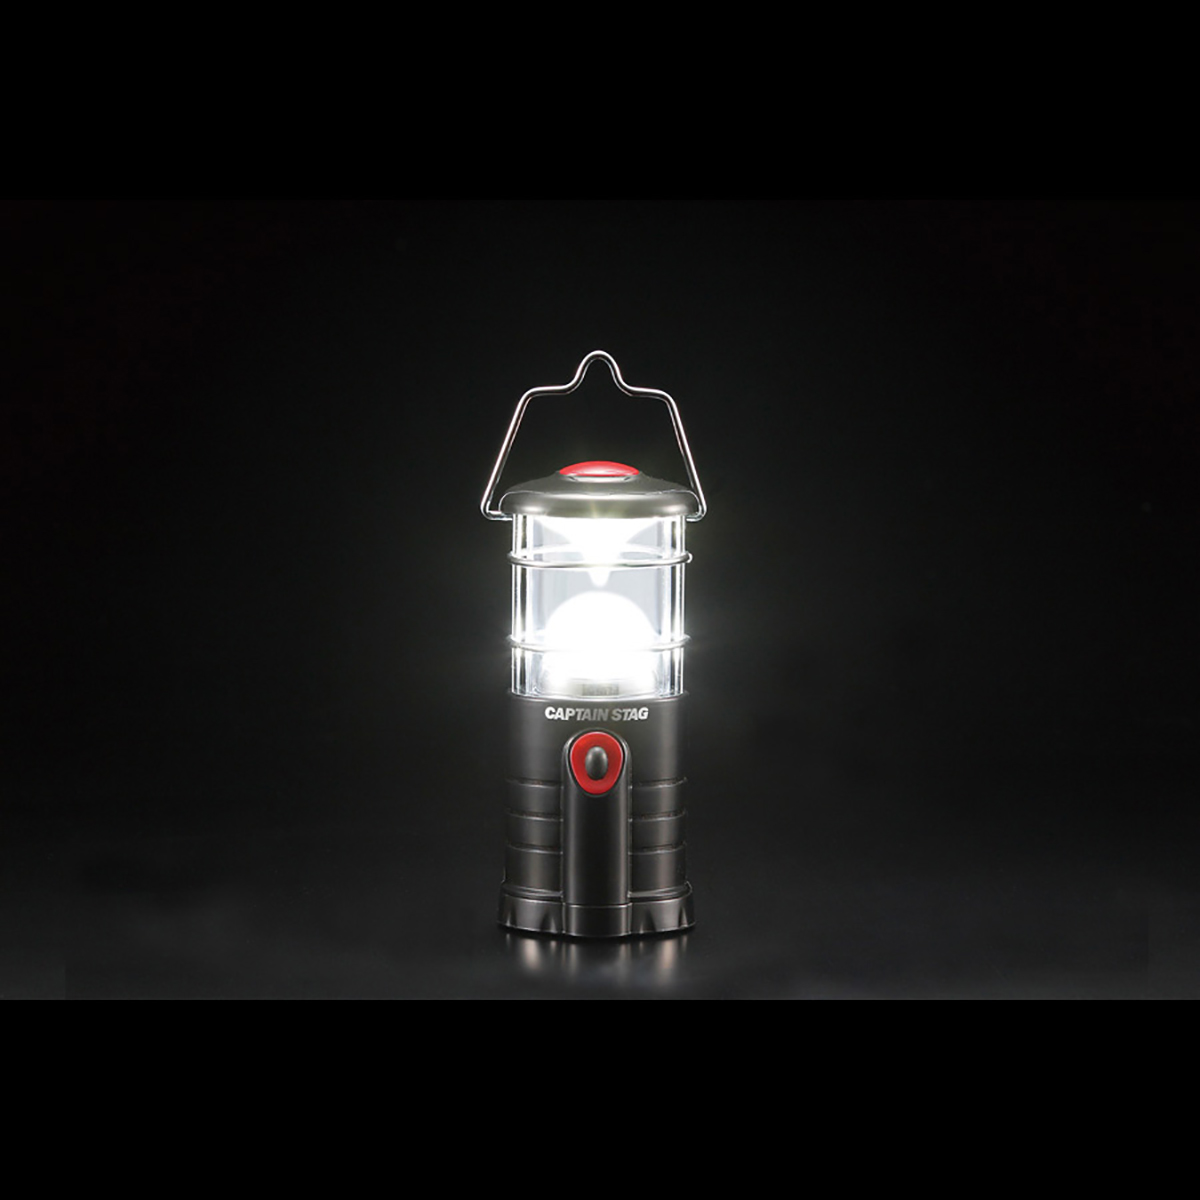 雷神 チップ型LEDランタン(カラビナ付) - アウトドア・キャンプ用品 - キャプテンスタッグ